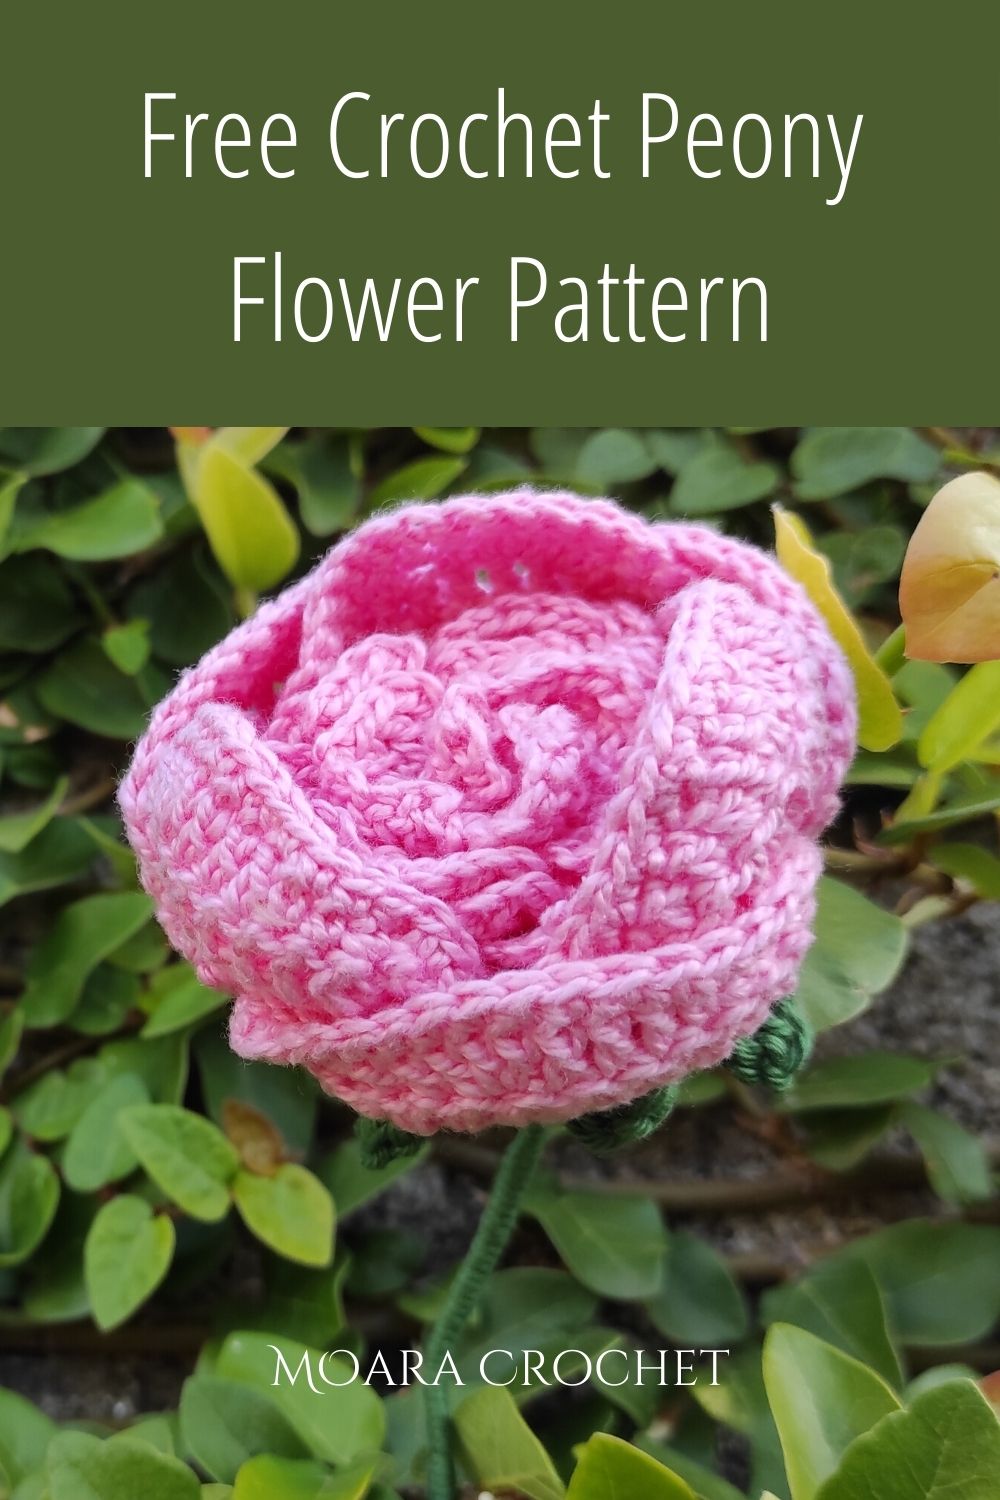 Free Croche Peony Flower Pattern with Moara Crochet